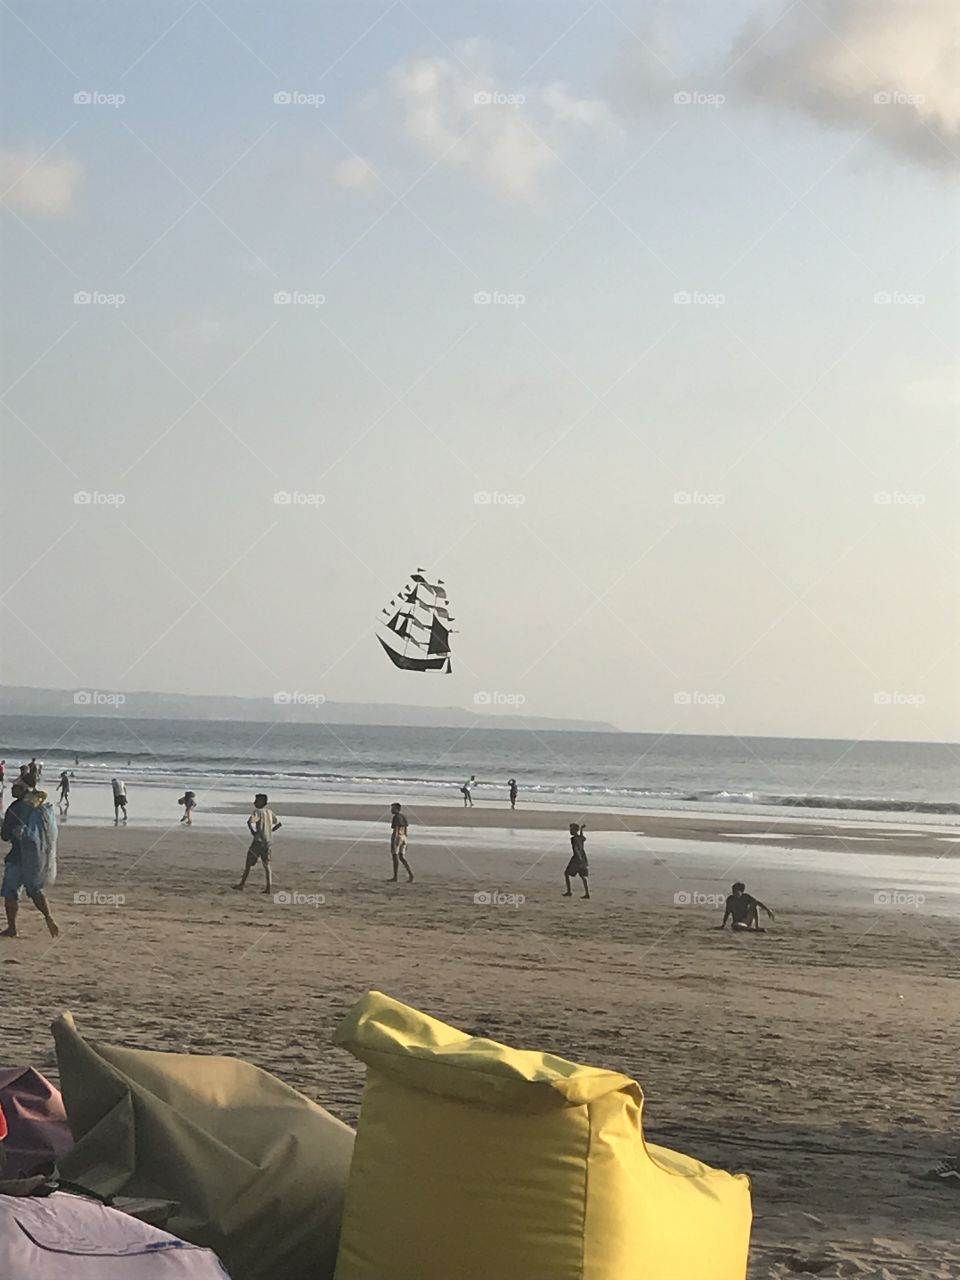 Kite at the beach